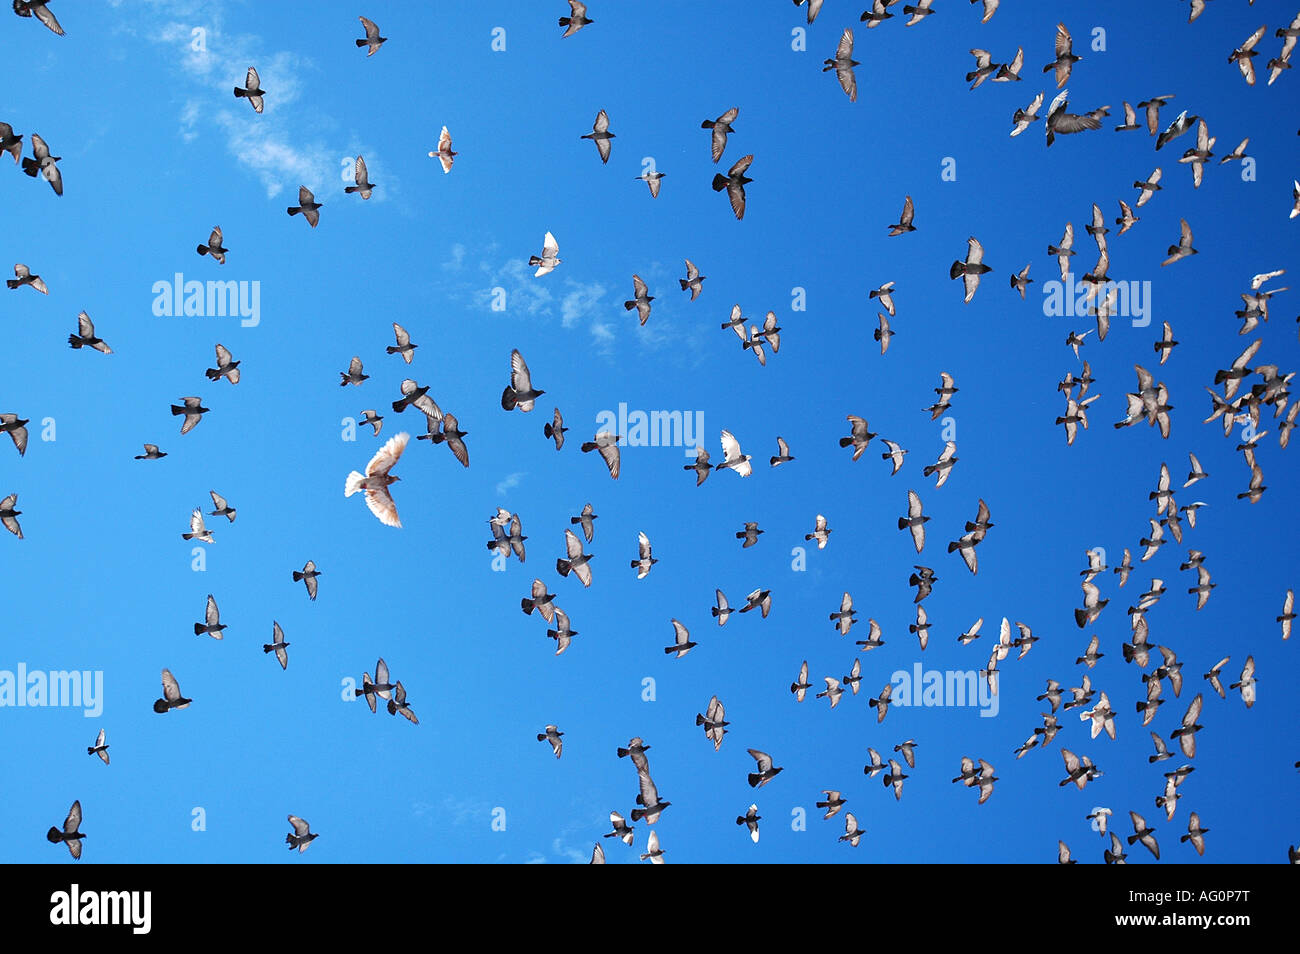 Oiseaux voler au-dessus de la vieille ville Dubtrovnik, Croatie Banque D'Images